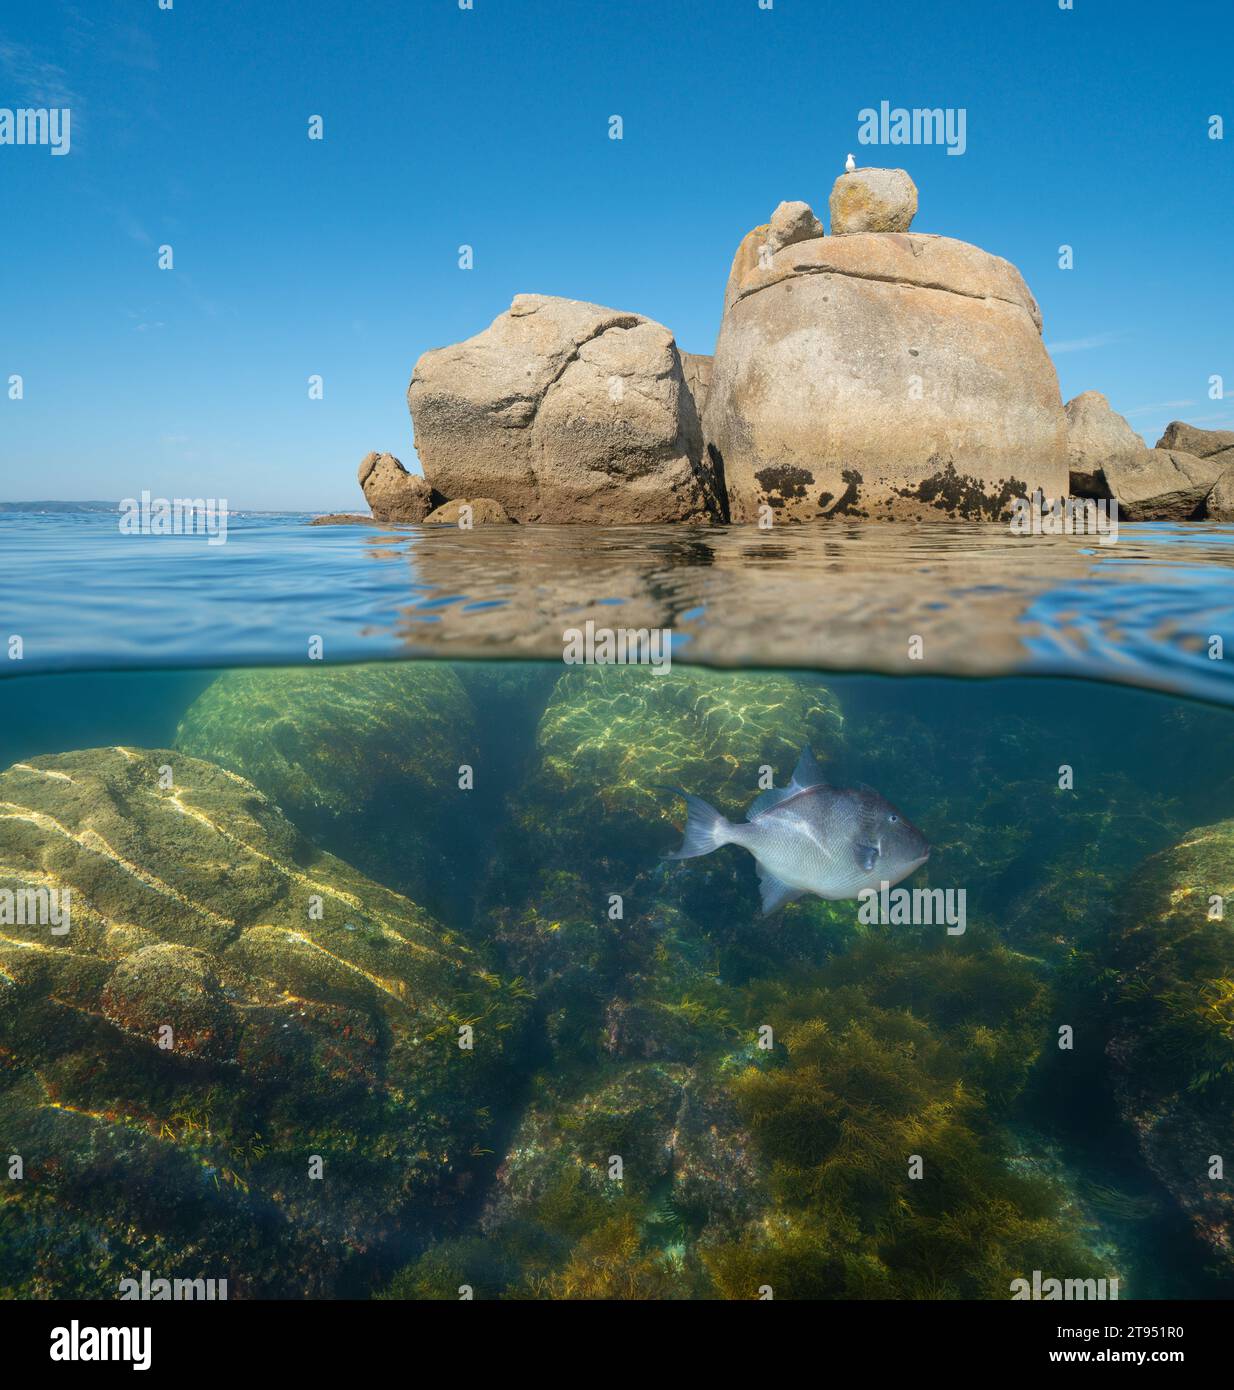 Die Felsbrocken im Atlantischen Ozean teilen den Blick über und unter der Wasseroberfläche, die Naturszene, Spanien, Galicien, Rias Baixas Stockfoto